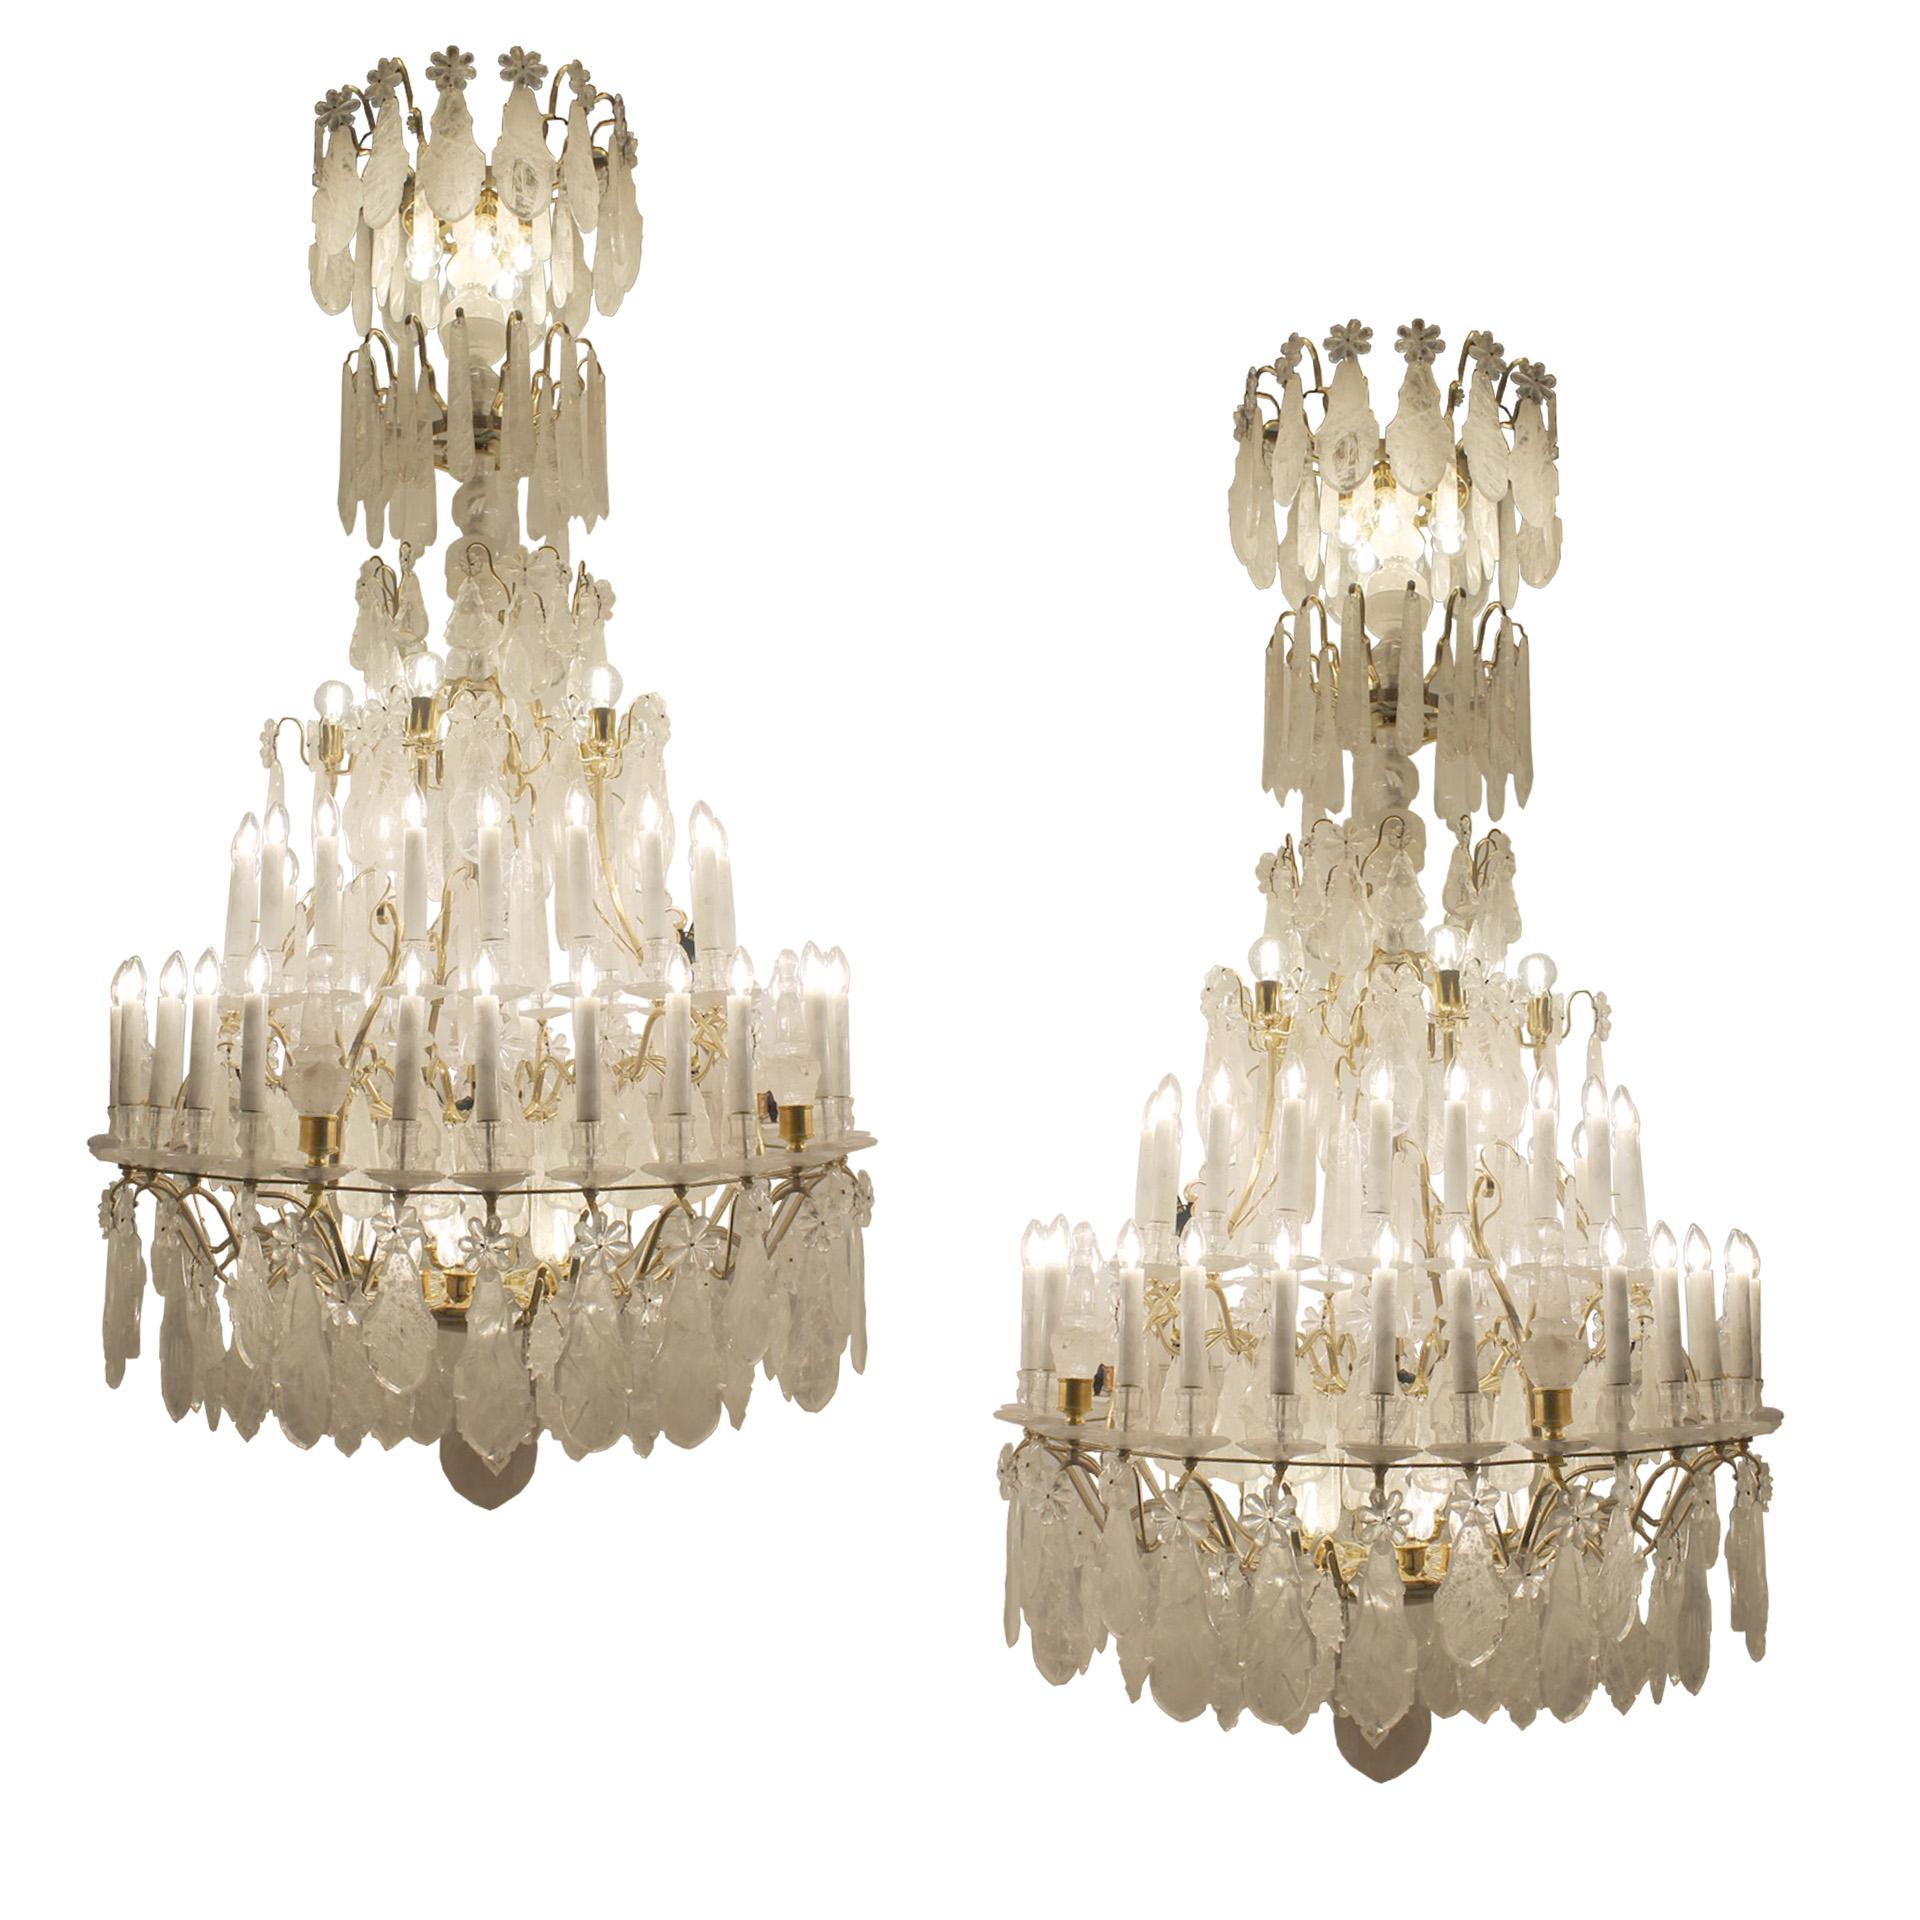 Exceptionnelle paire de lustres en cristal de roche dans le style classique Louis XV avec des dimensions inhabituelles de 2,4 m de hauteur, 1,2 m de diamètre. Chaque lustre est composé de 45 ampoules principales et de 16 ampoules pygmées. Toutes les